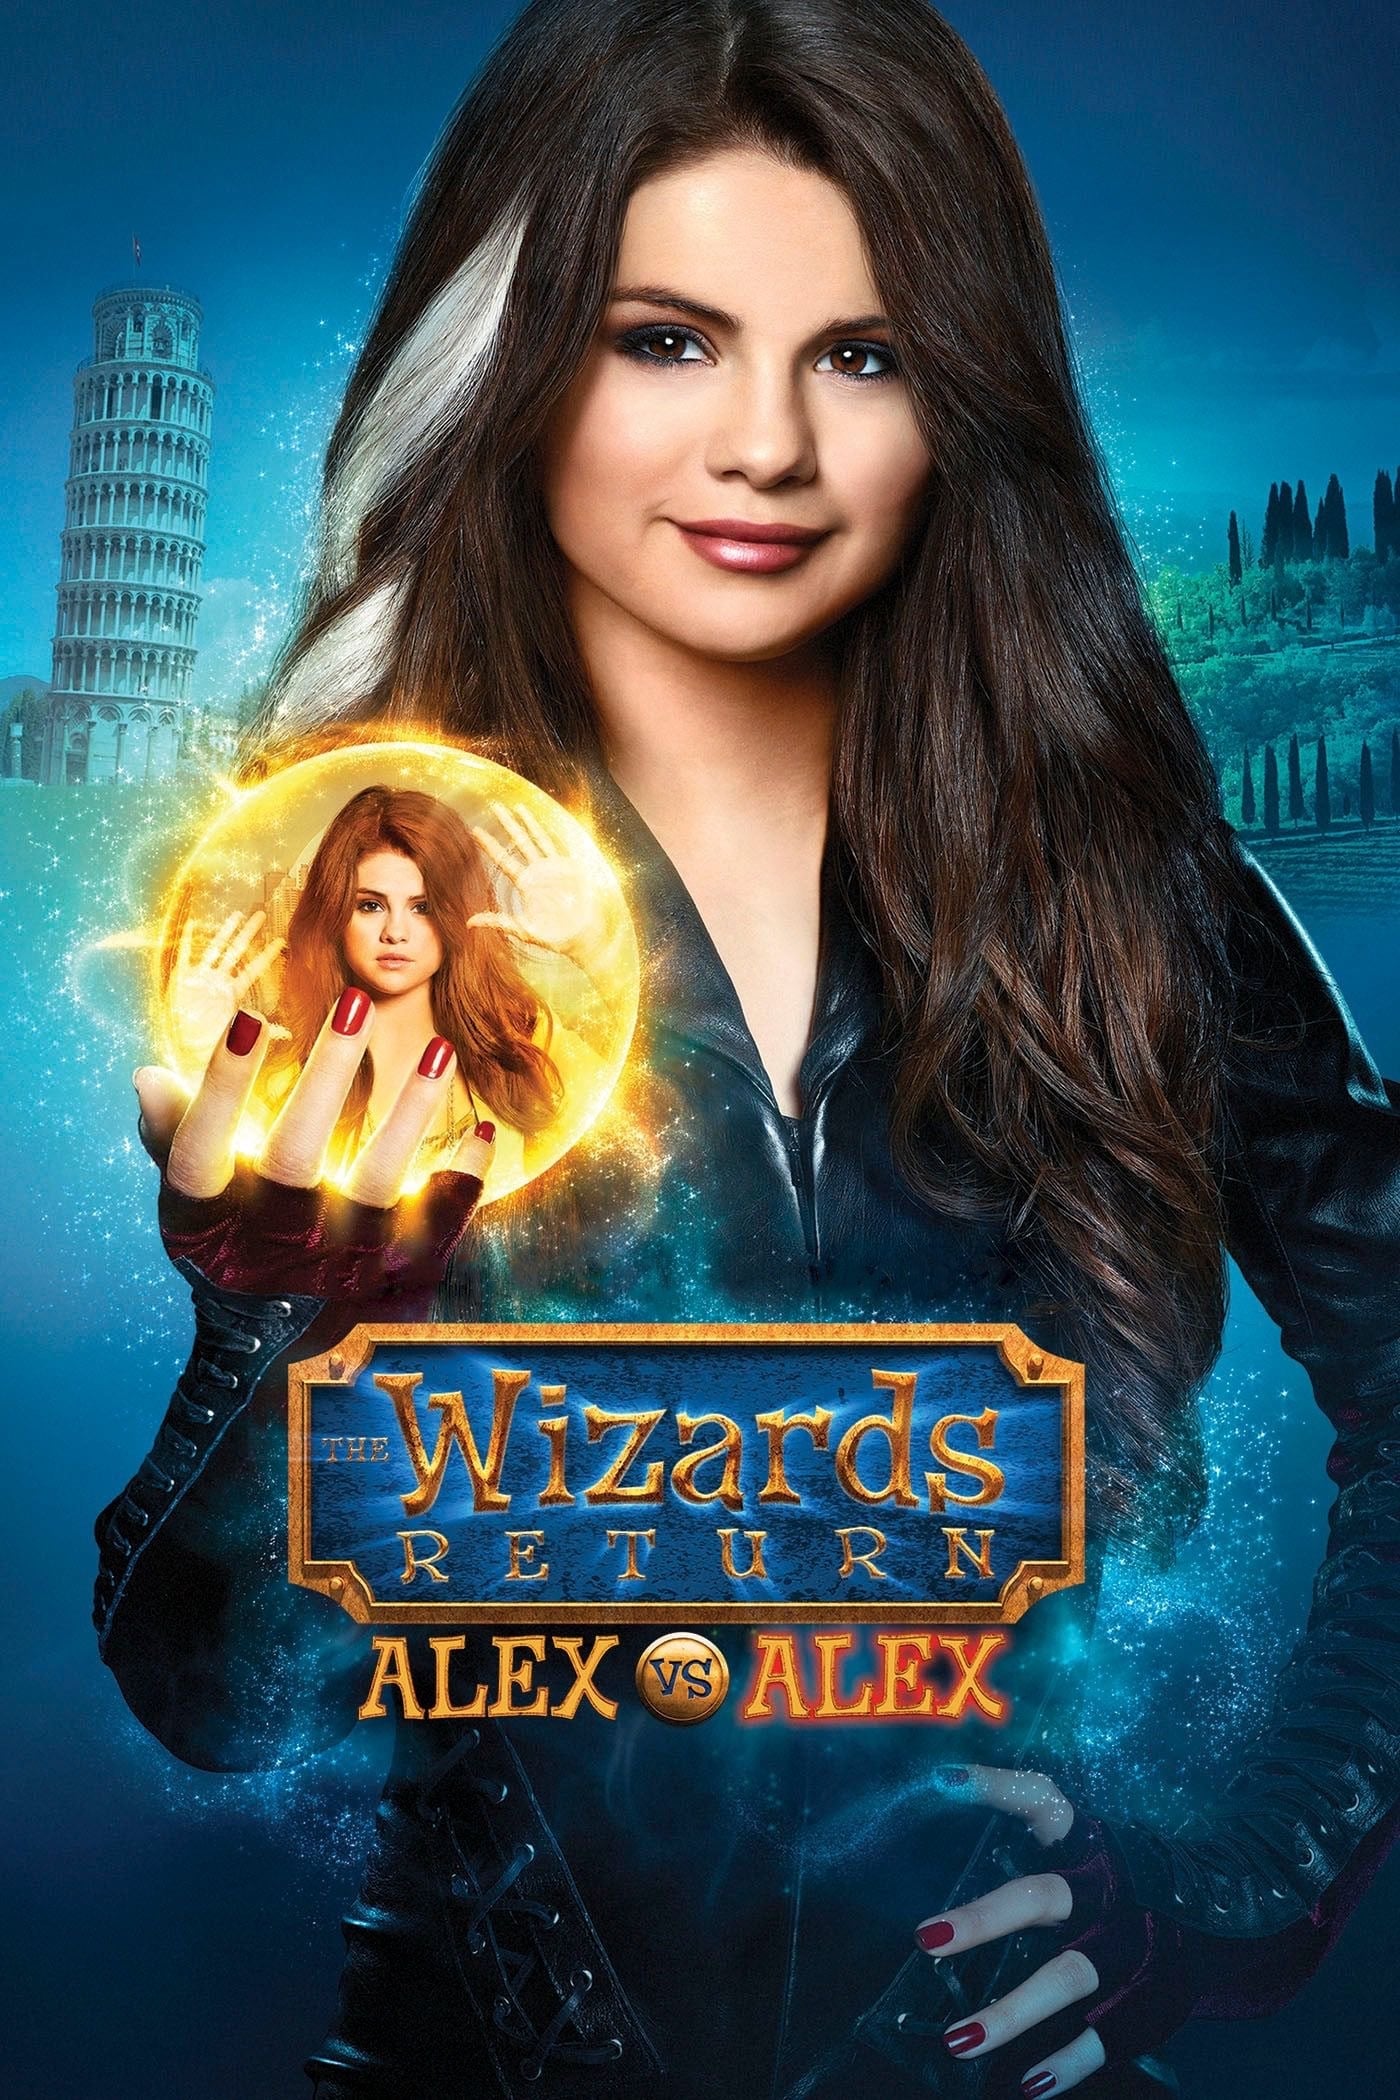 The Wizards Return: Alex vs. Alex (The Wizards Return: Alex vs. Alex) [2013]